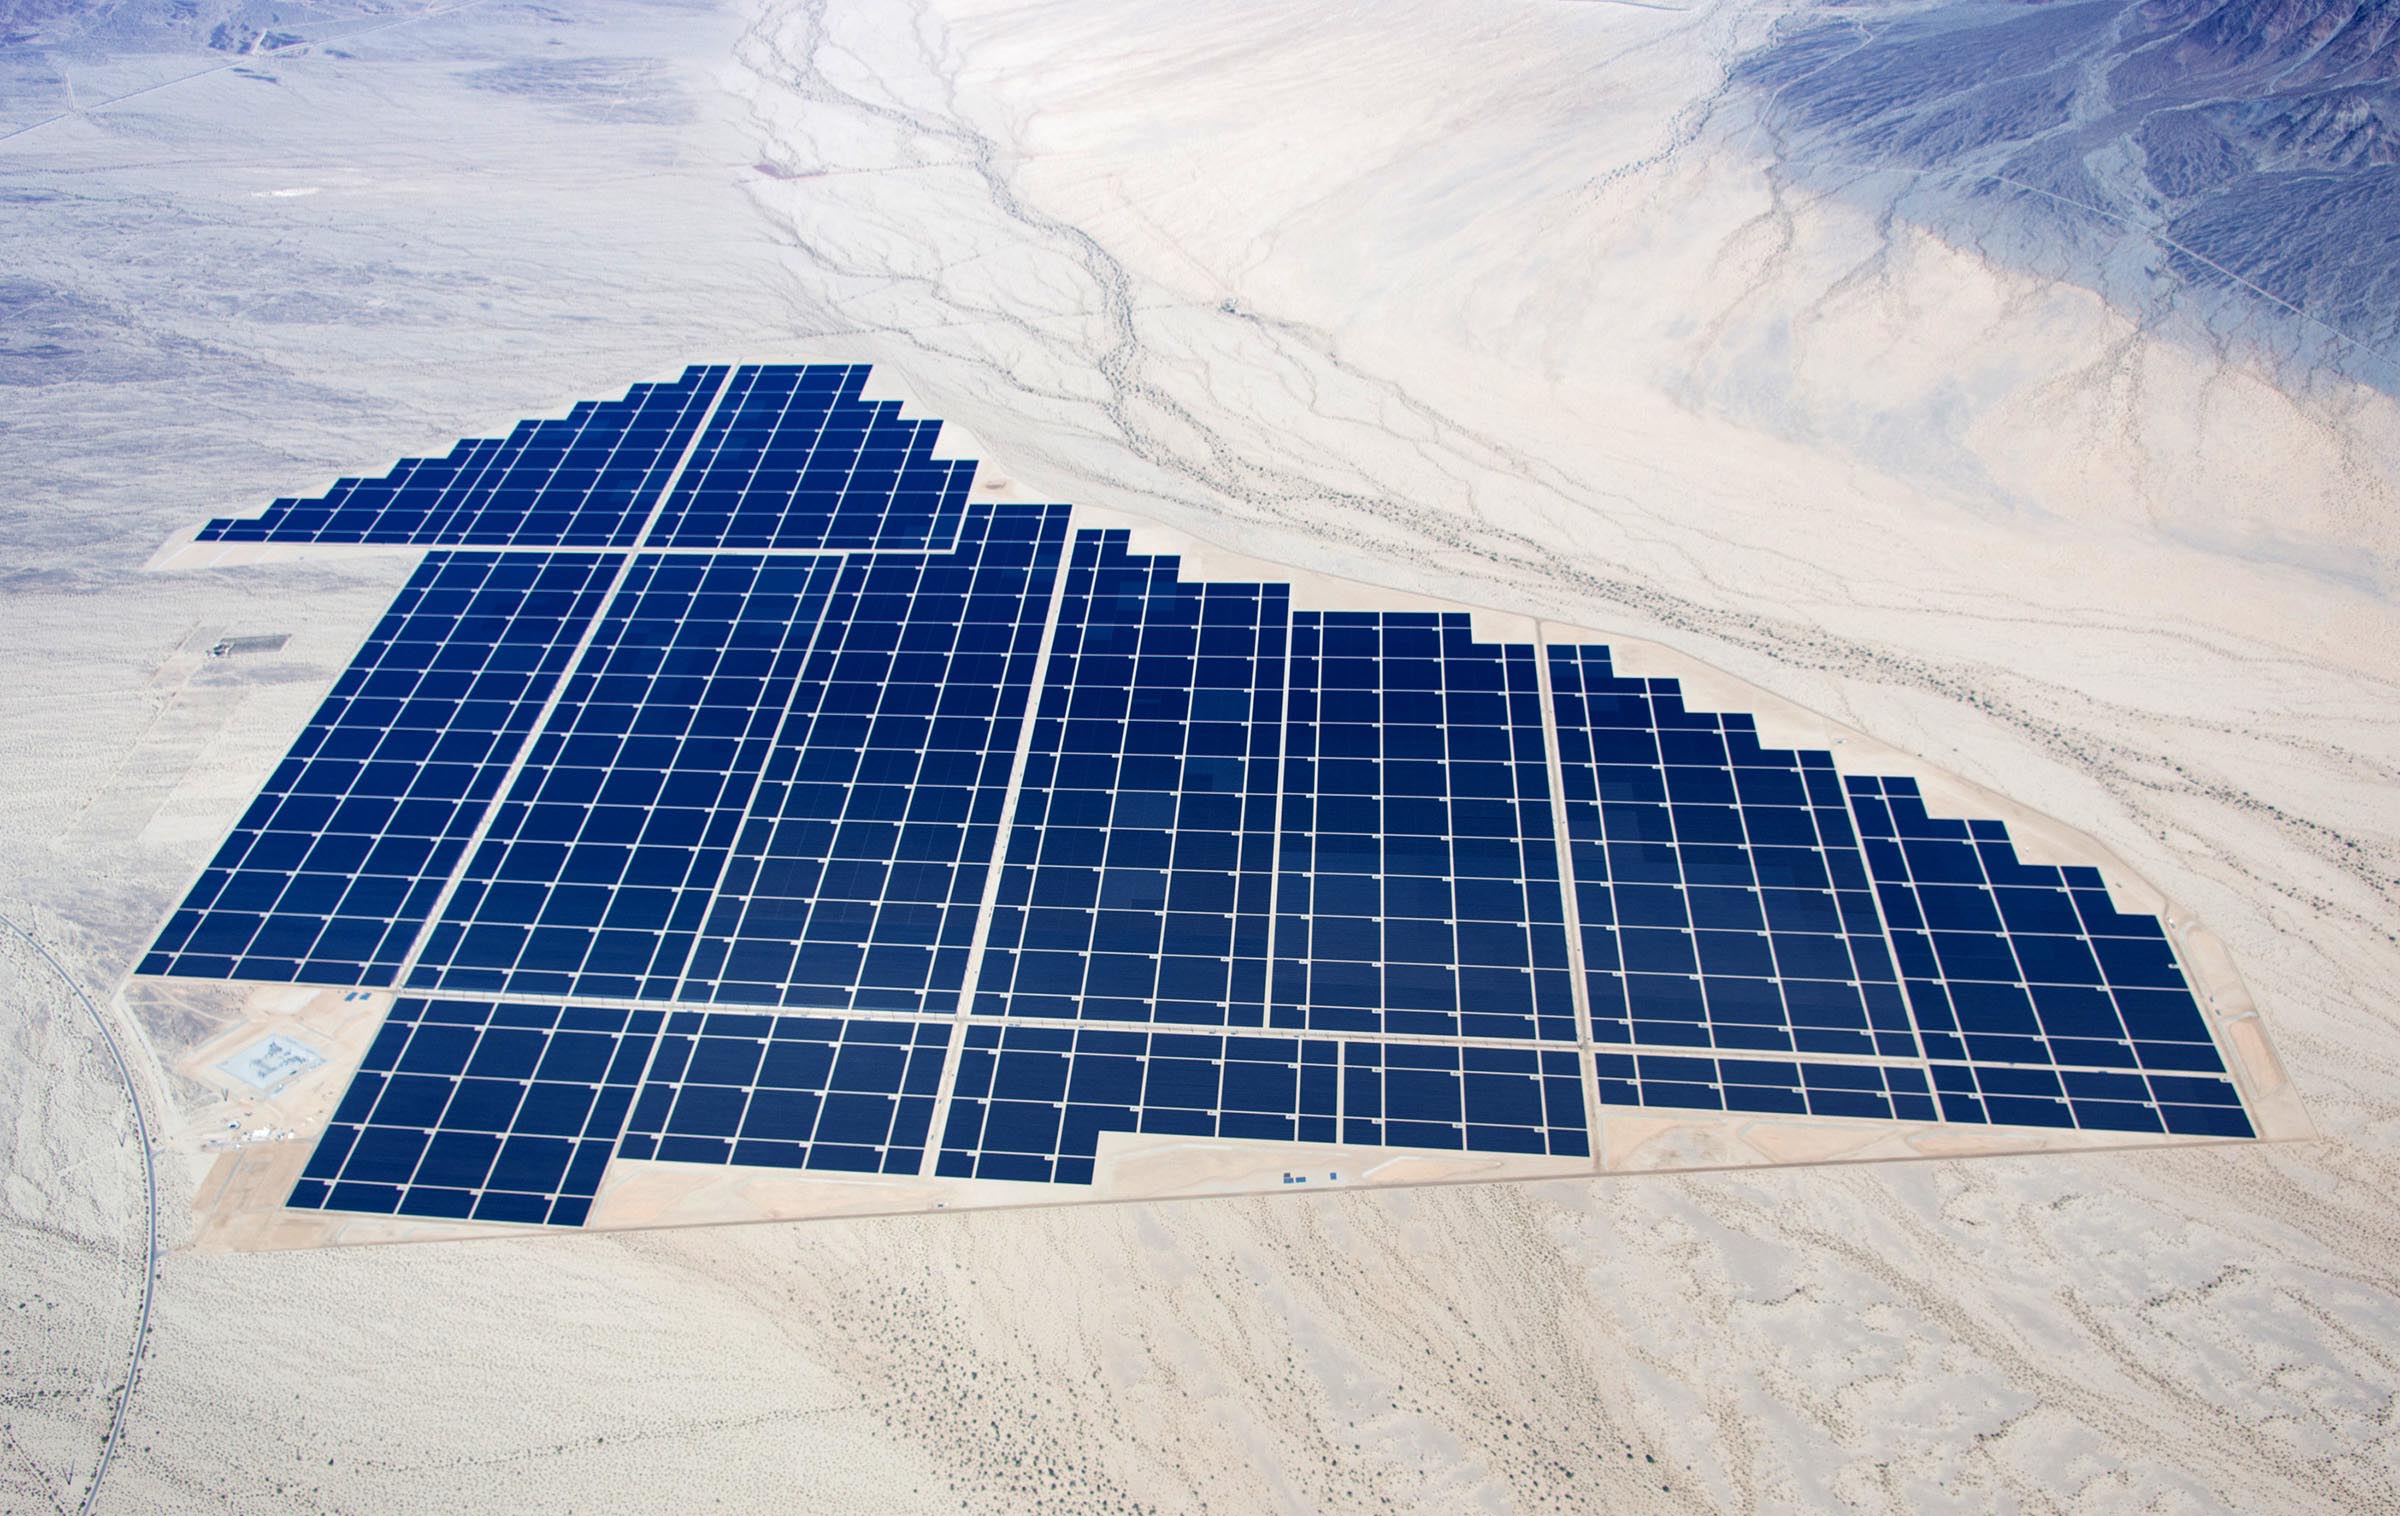 Проект солнечных панелей. Desert sunlight Solar Farm. Solar Energy в пустыне. Солнечные панели в пустыне Тенгер. Солнечная энергия.